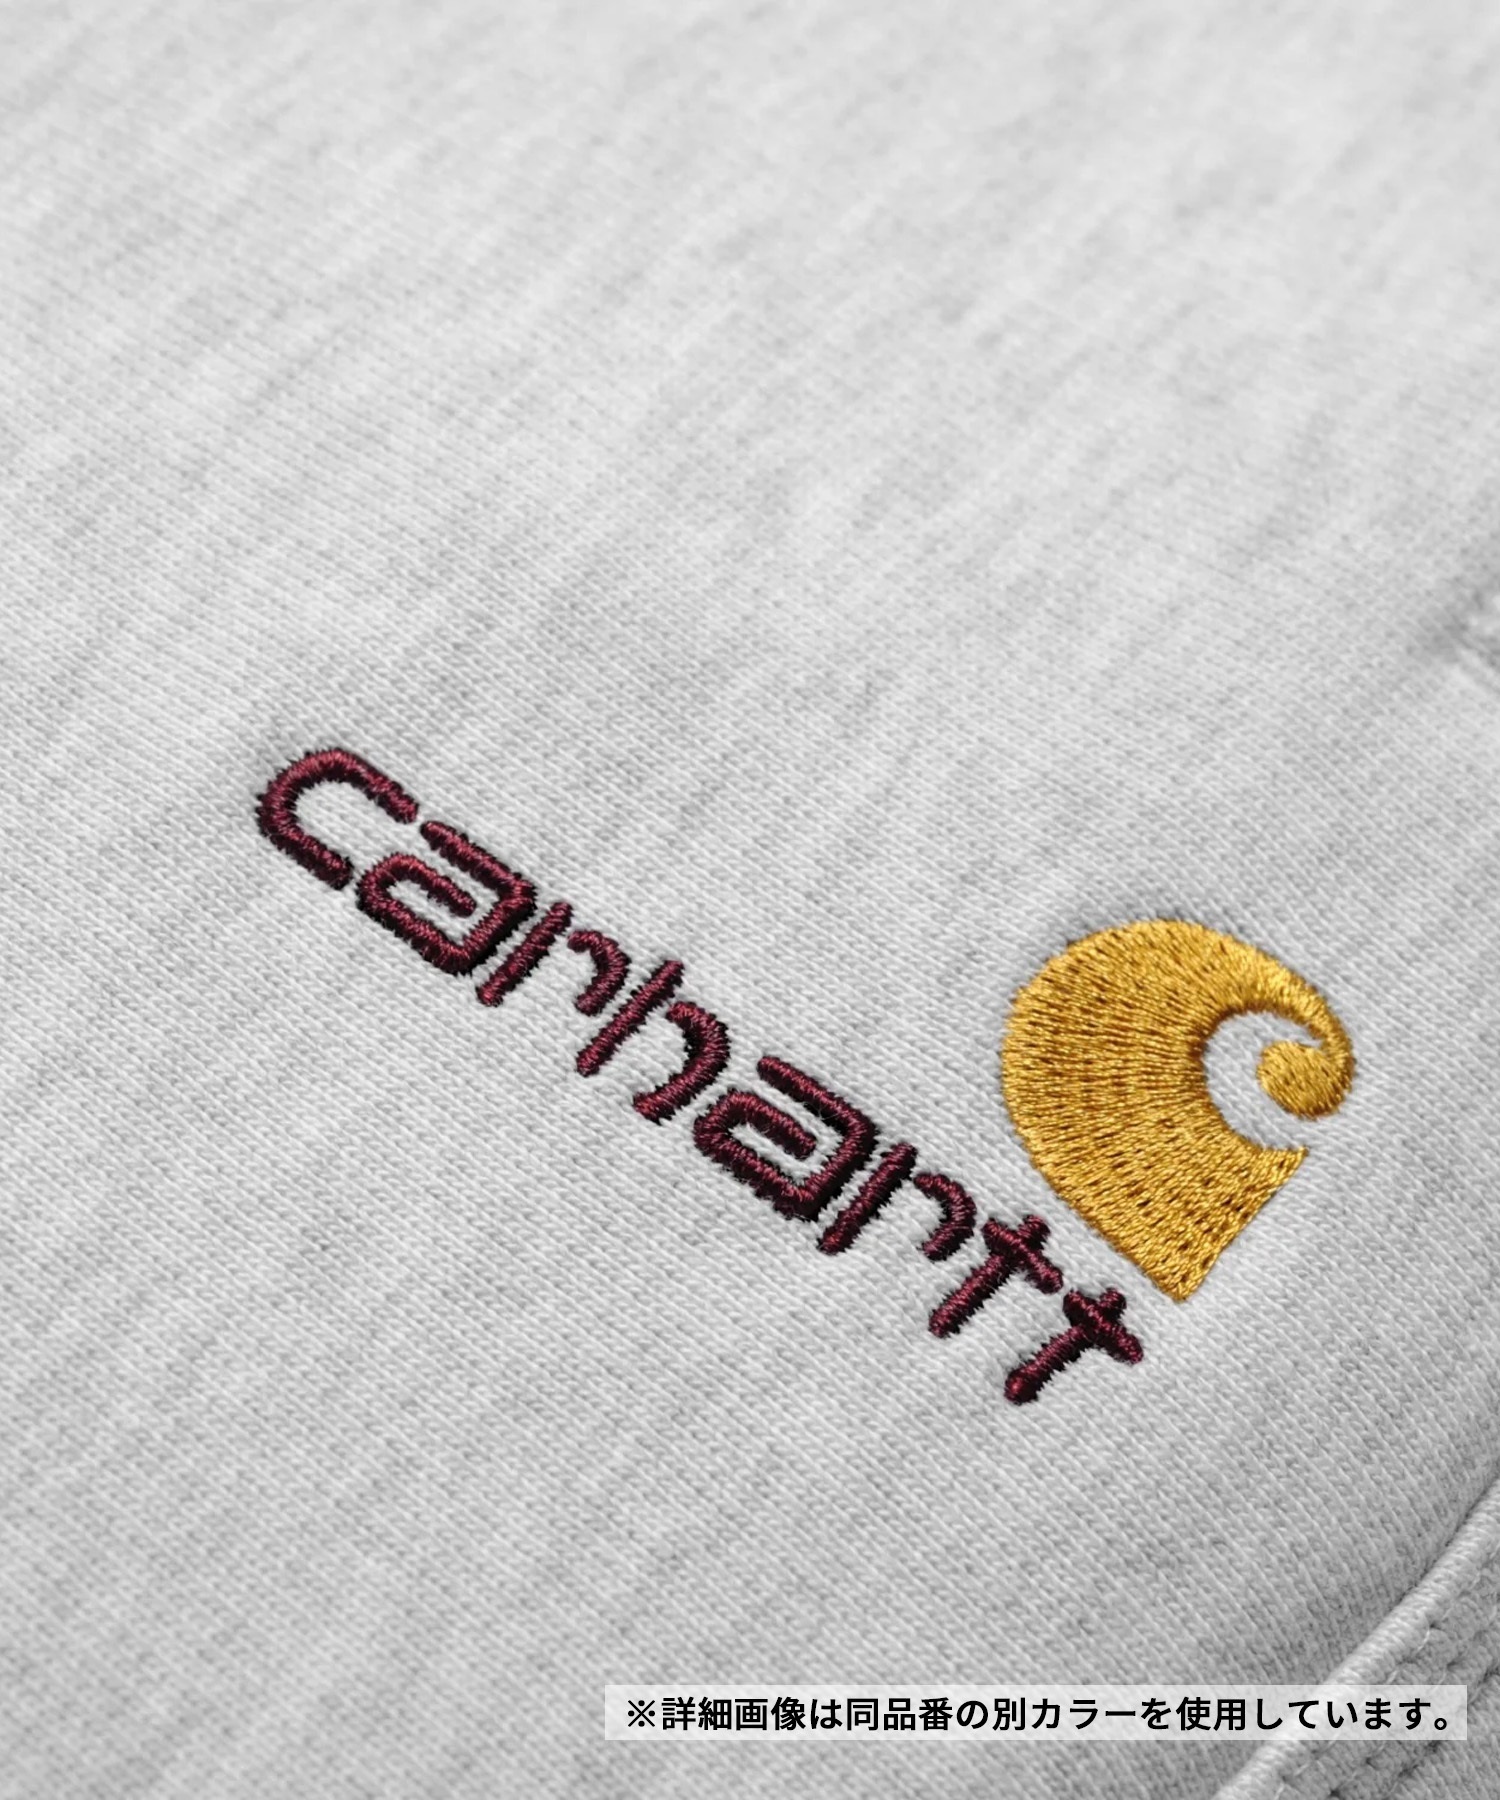 Carhartt/カーハート AMERICAN SCRIPT JOGGING PANT アメリカンスプリクト ジョギングパンツ メンズ スウェット 裏起毛 ブラック I027042(BLACK-S)